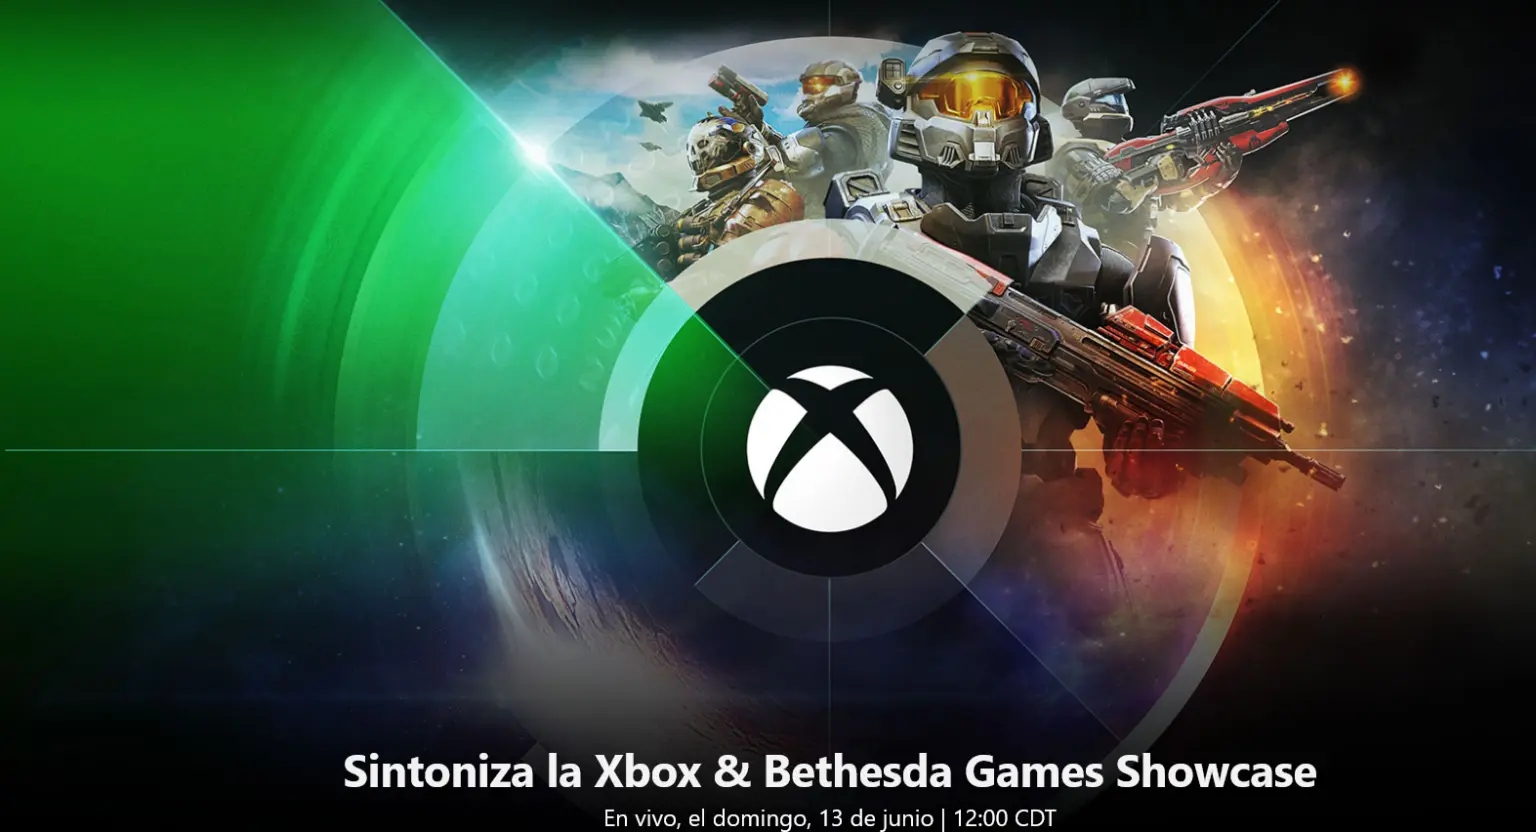 Showcase de Xbox & Bethesda Games; todos los detalles